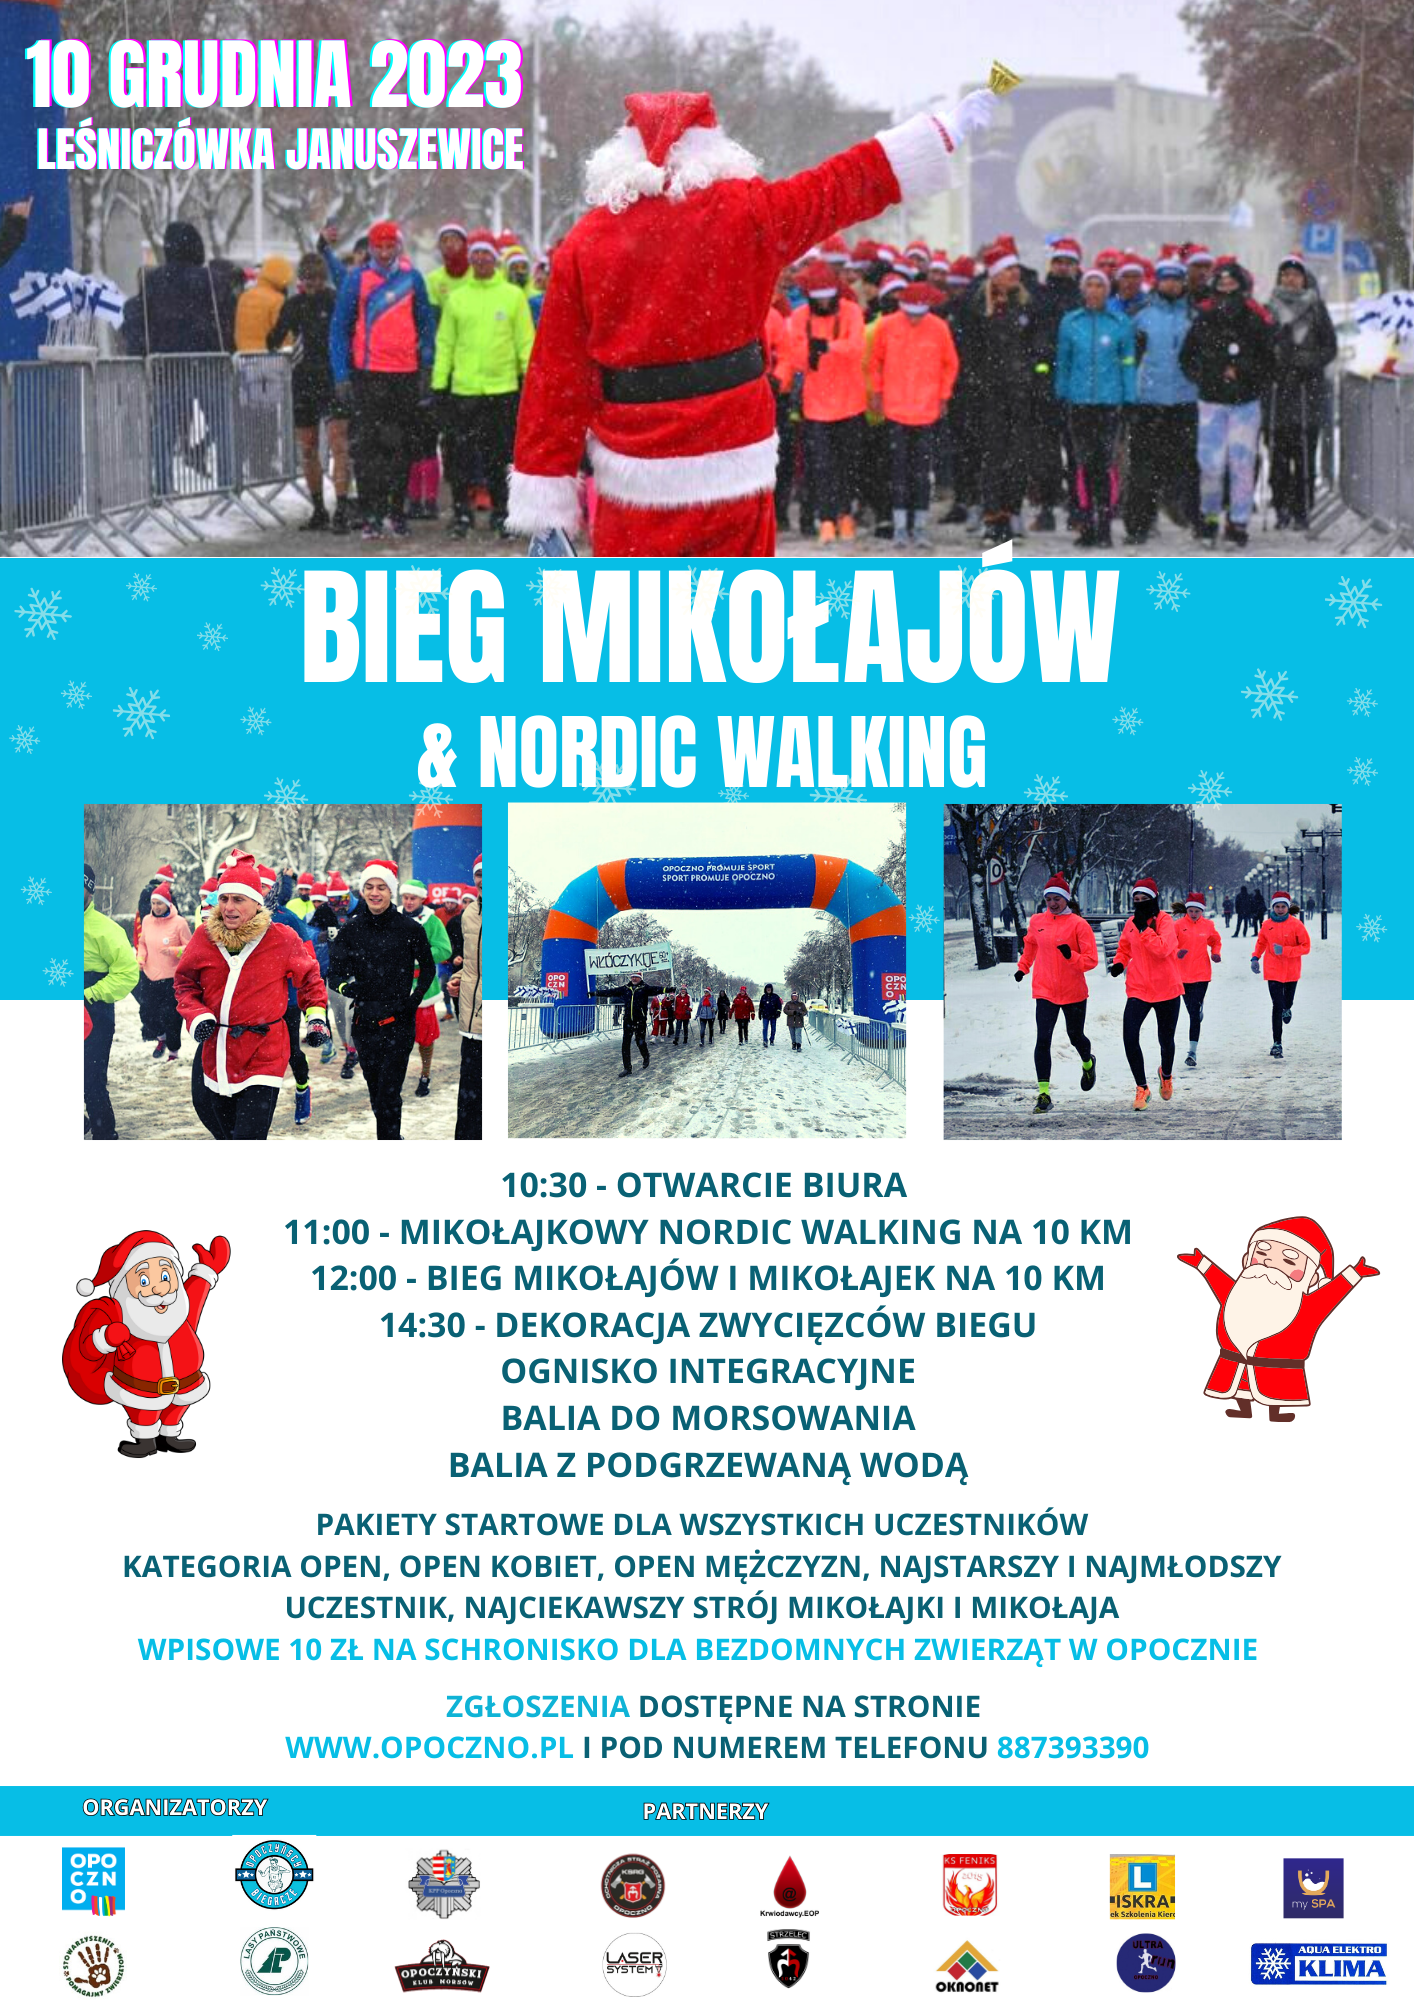 Burmistrz Opoczna Dariusz Kosno zaprasza na Bieg Mikołajów & Nordic Walking. Wydarzenie odbędzie się 10 grudnia 2023 r. na Leśniczówce 